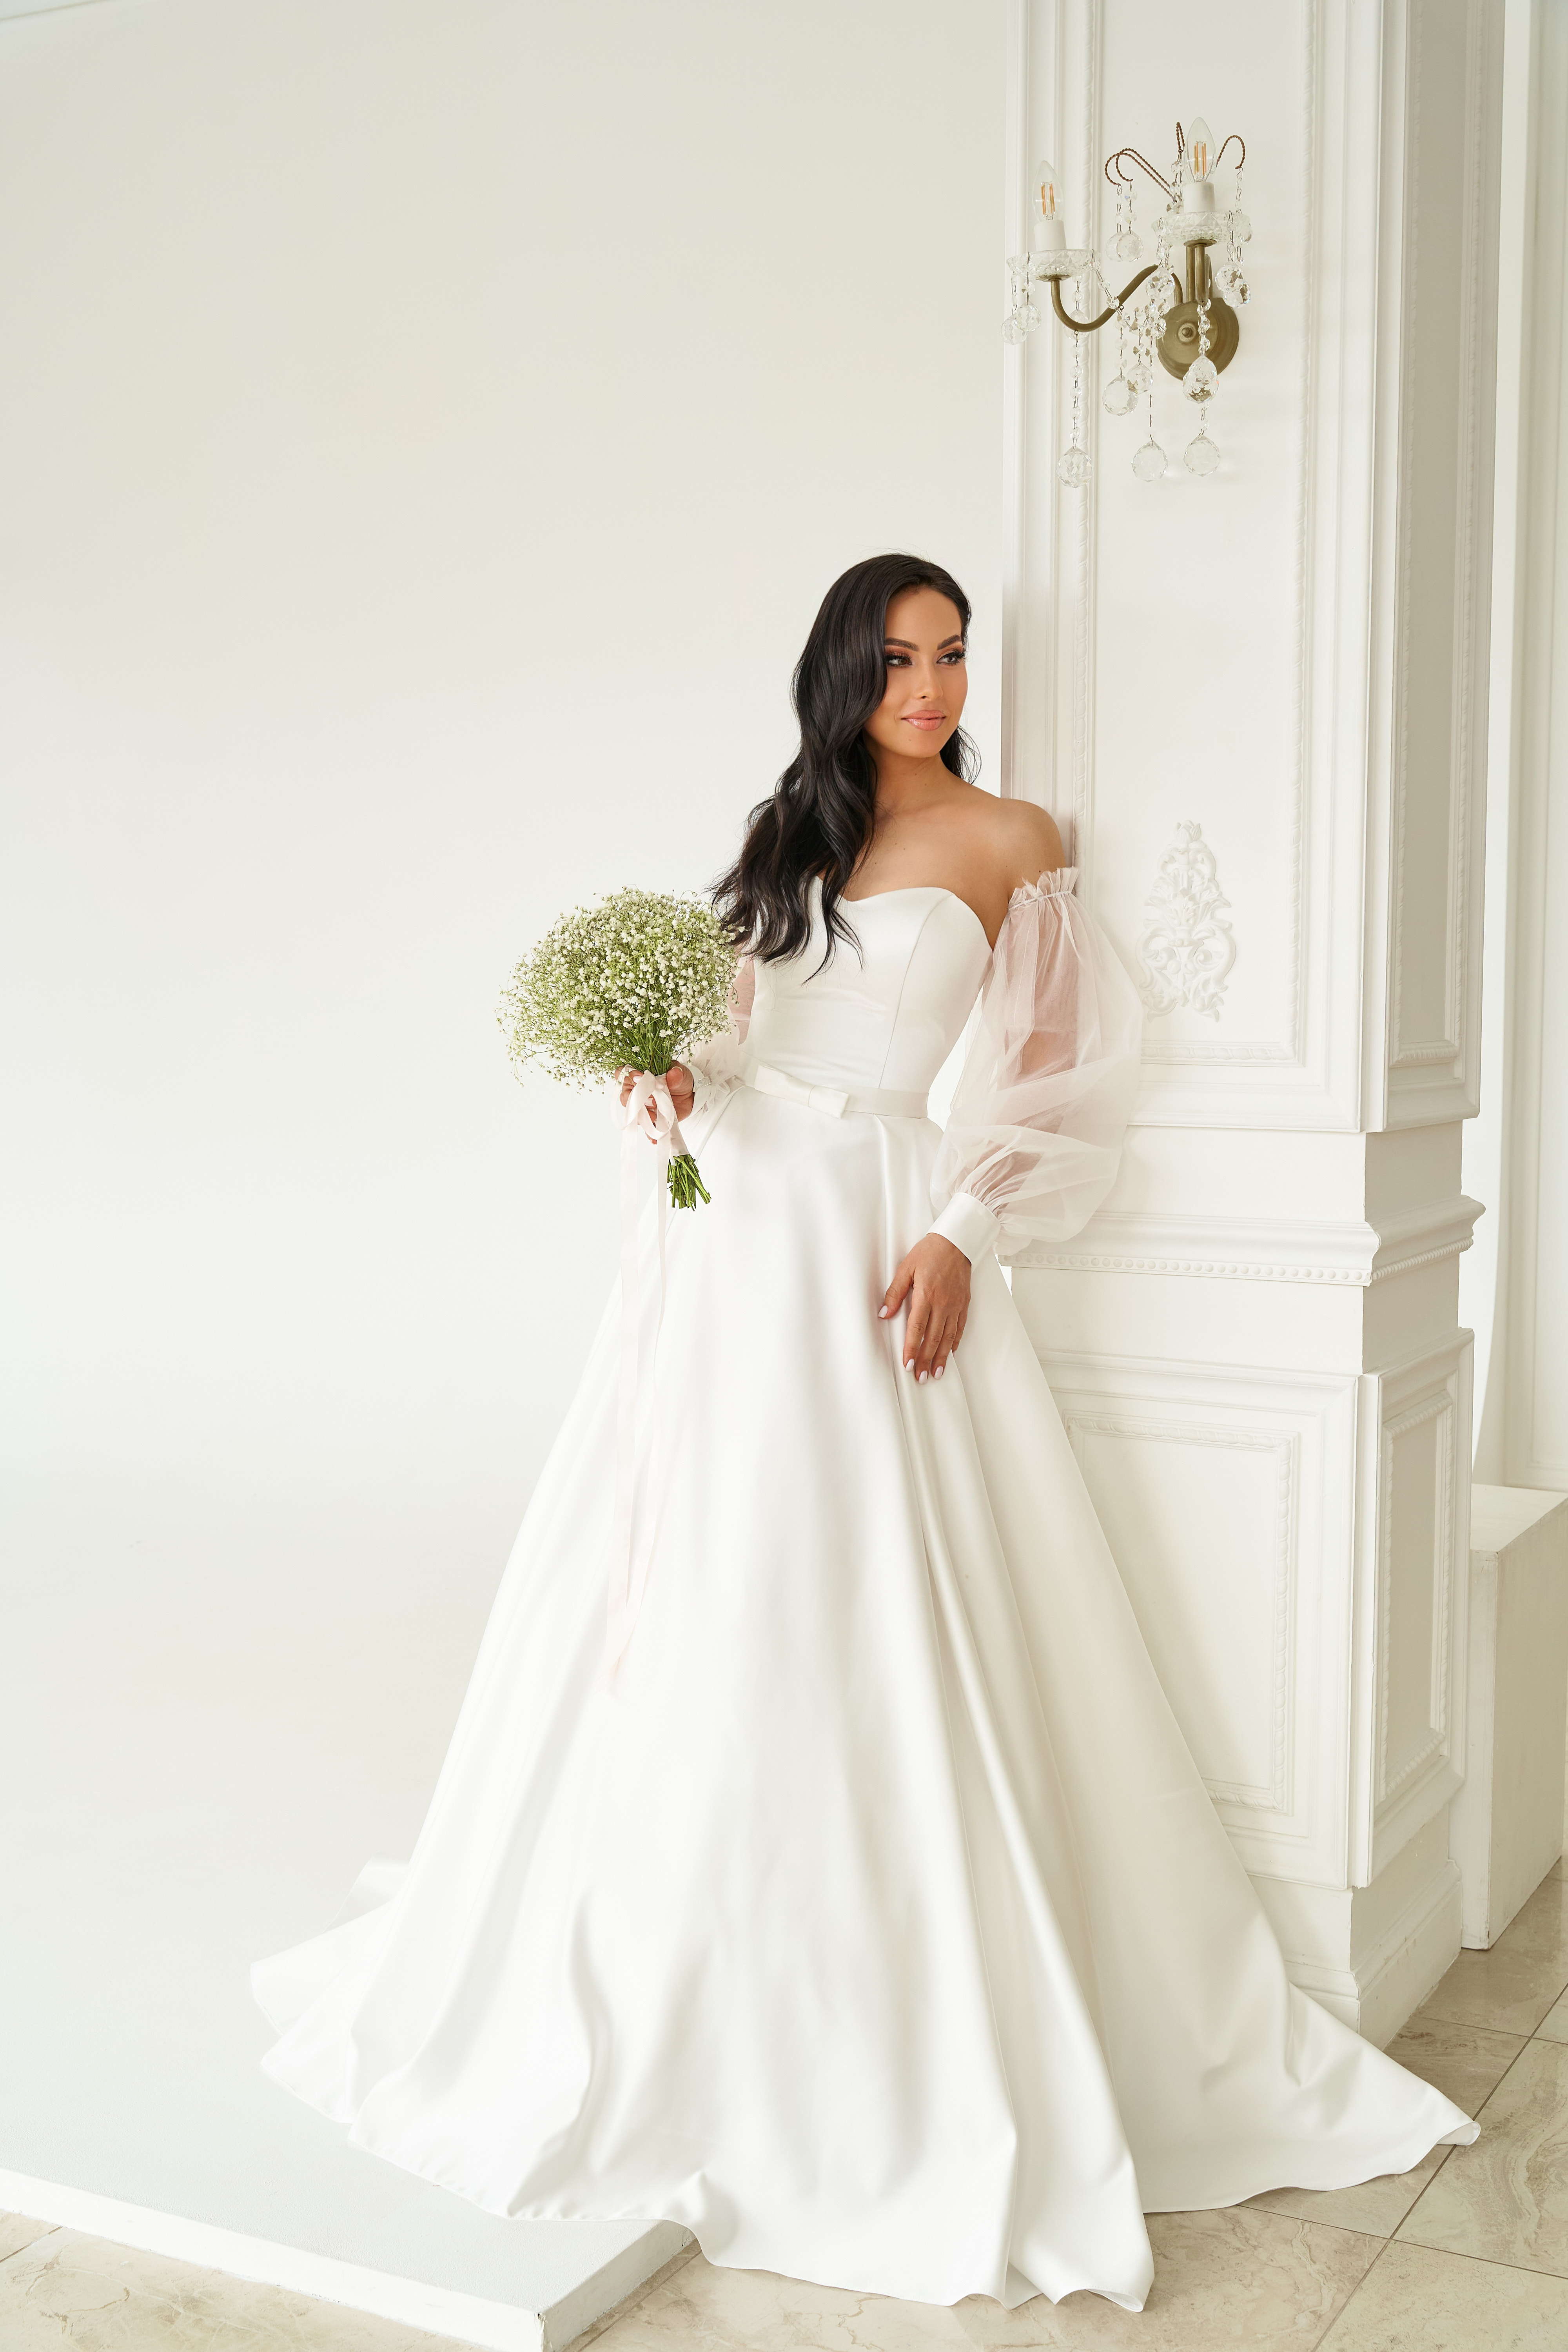 Свадебное платье Diva-119m